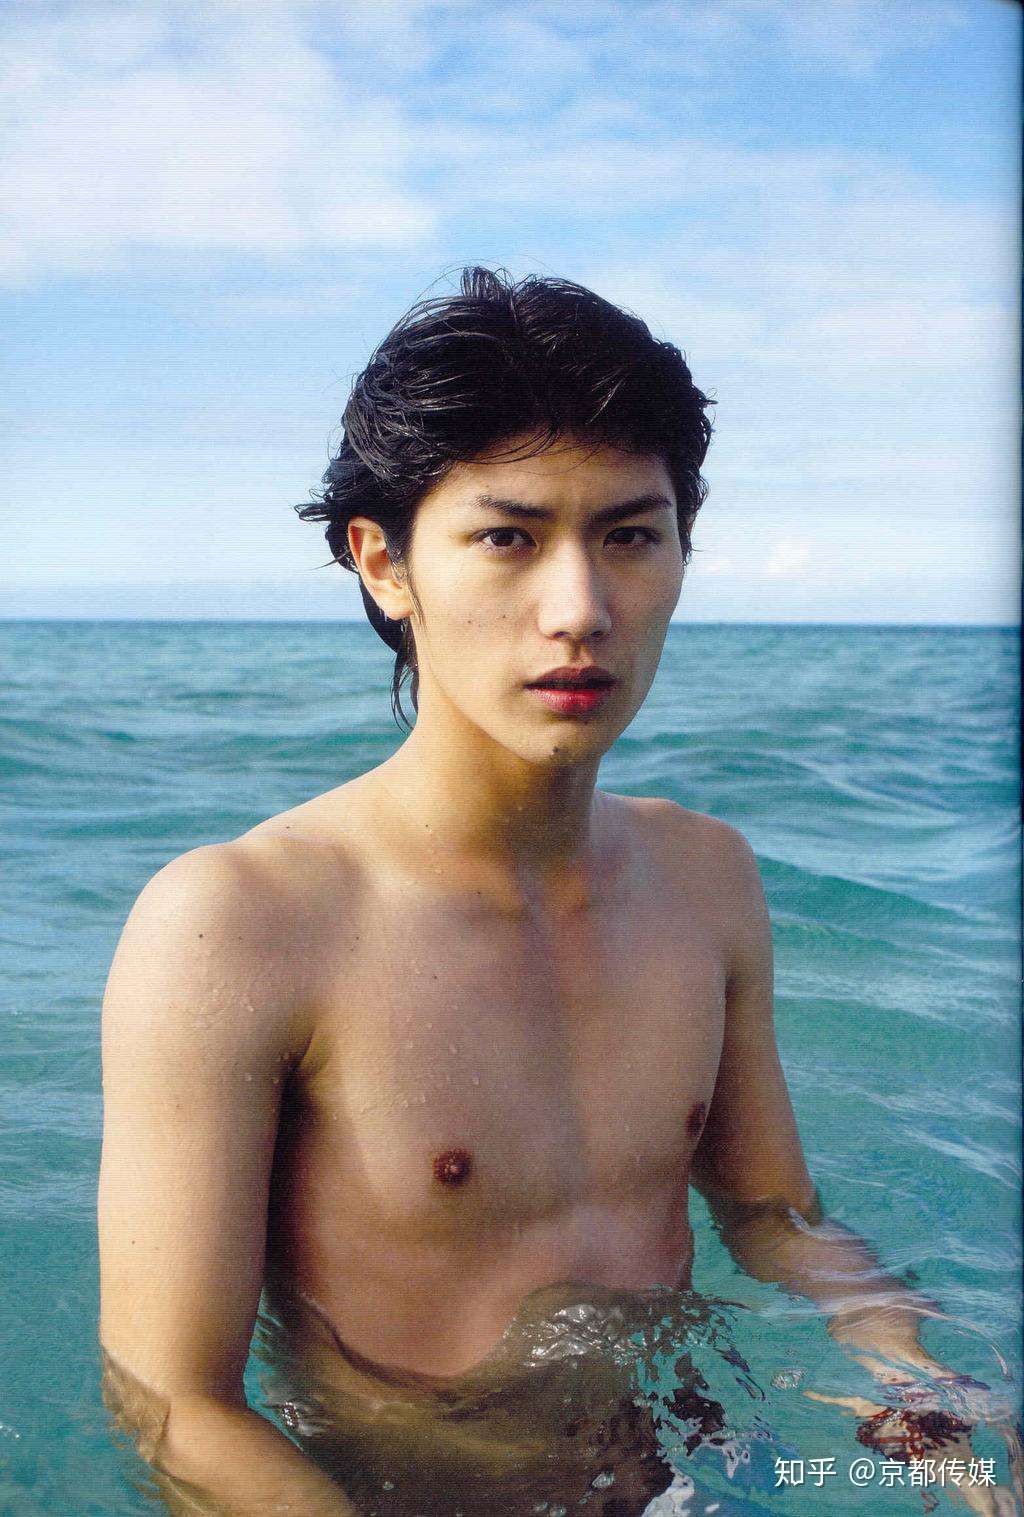 日本男演员三浦春马去世年年仅30岁 曾主演 恋空 男主角 知乎